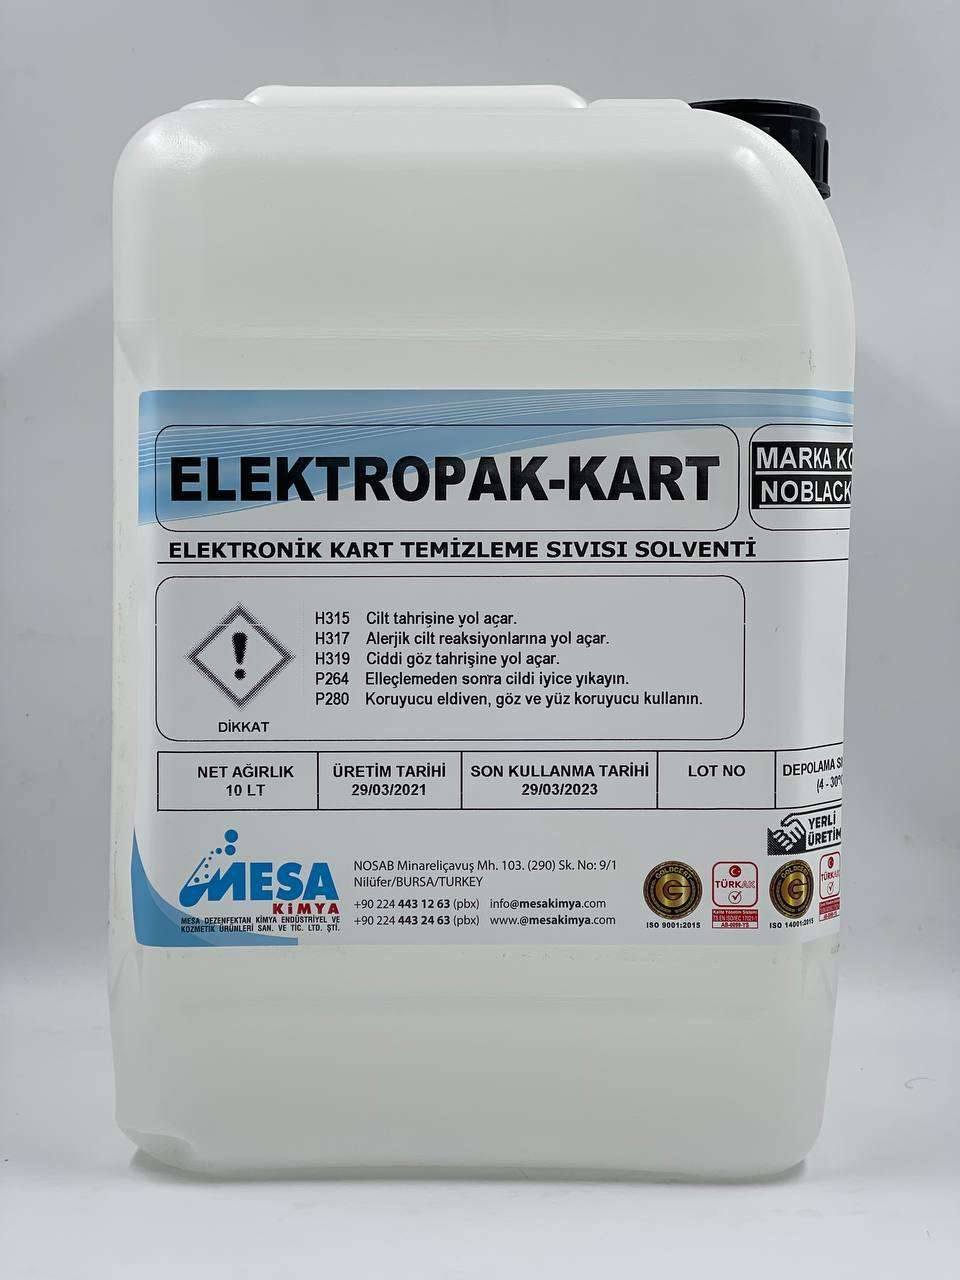 Elektronik kart temizleme sıvısı ElektropaK-Kart